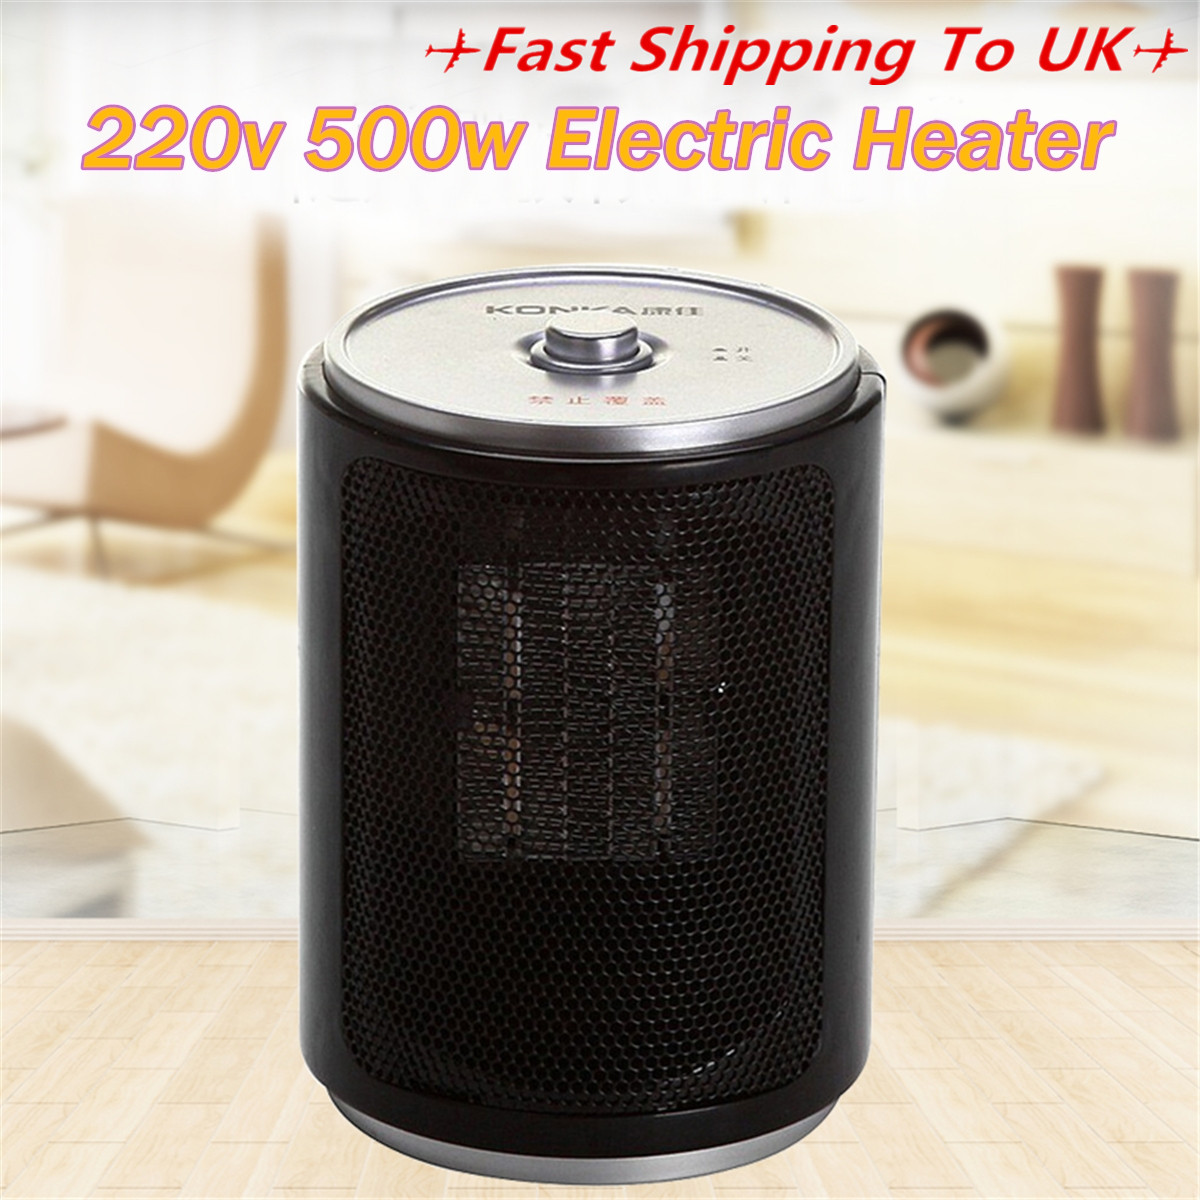 Portable-Electric-Desk-Mini-Air-Heater-Fan-Home-Warmer-Heating-Winter-Fan-1372394-1